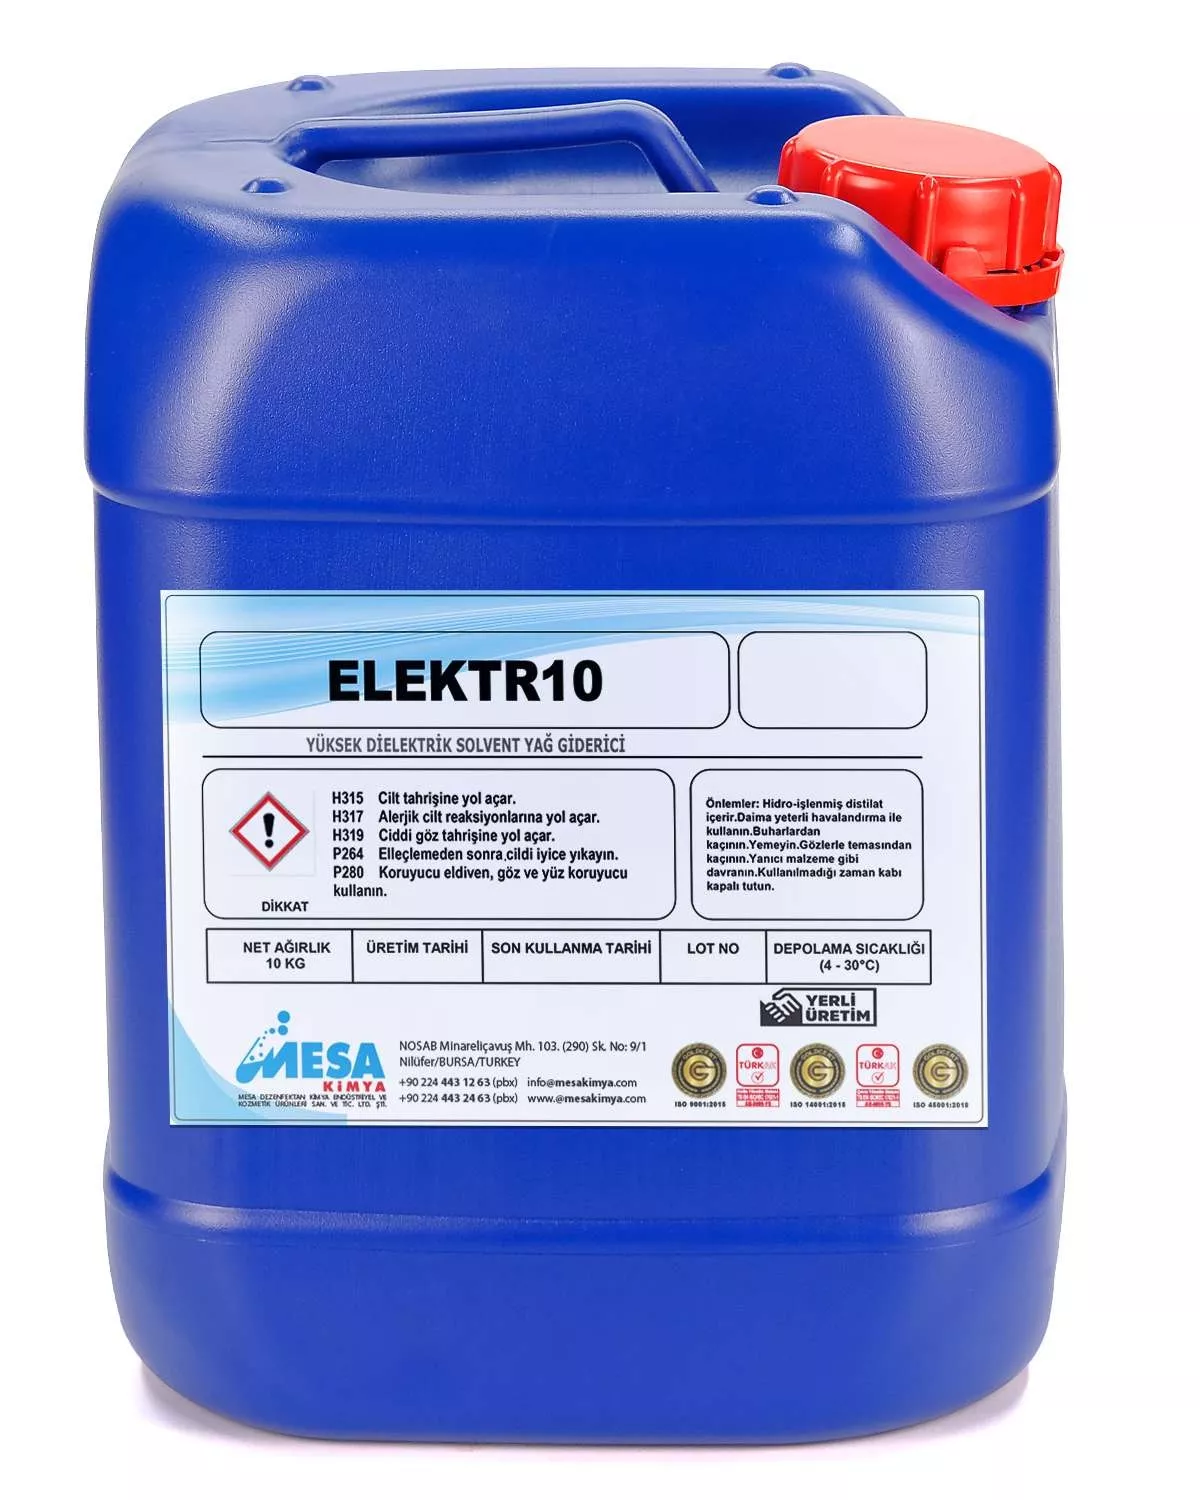 Yüksek dielektrik dayanıklı solvent yağ giderici ELEKTR10